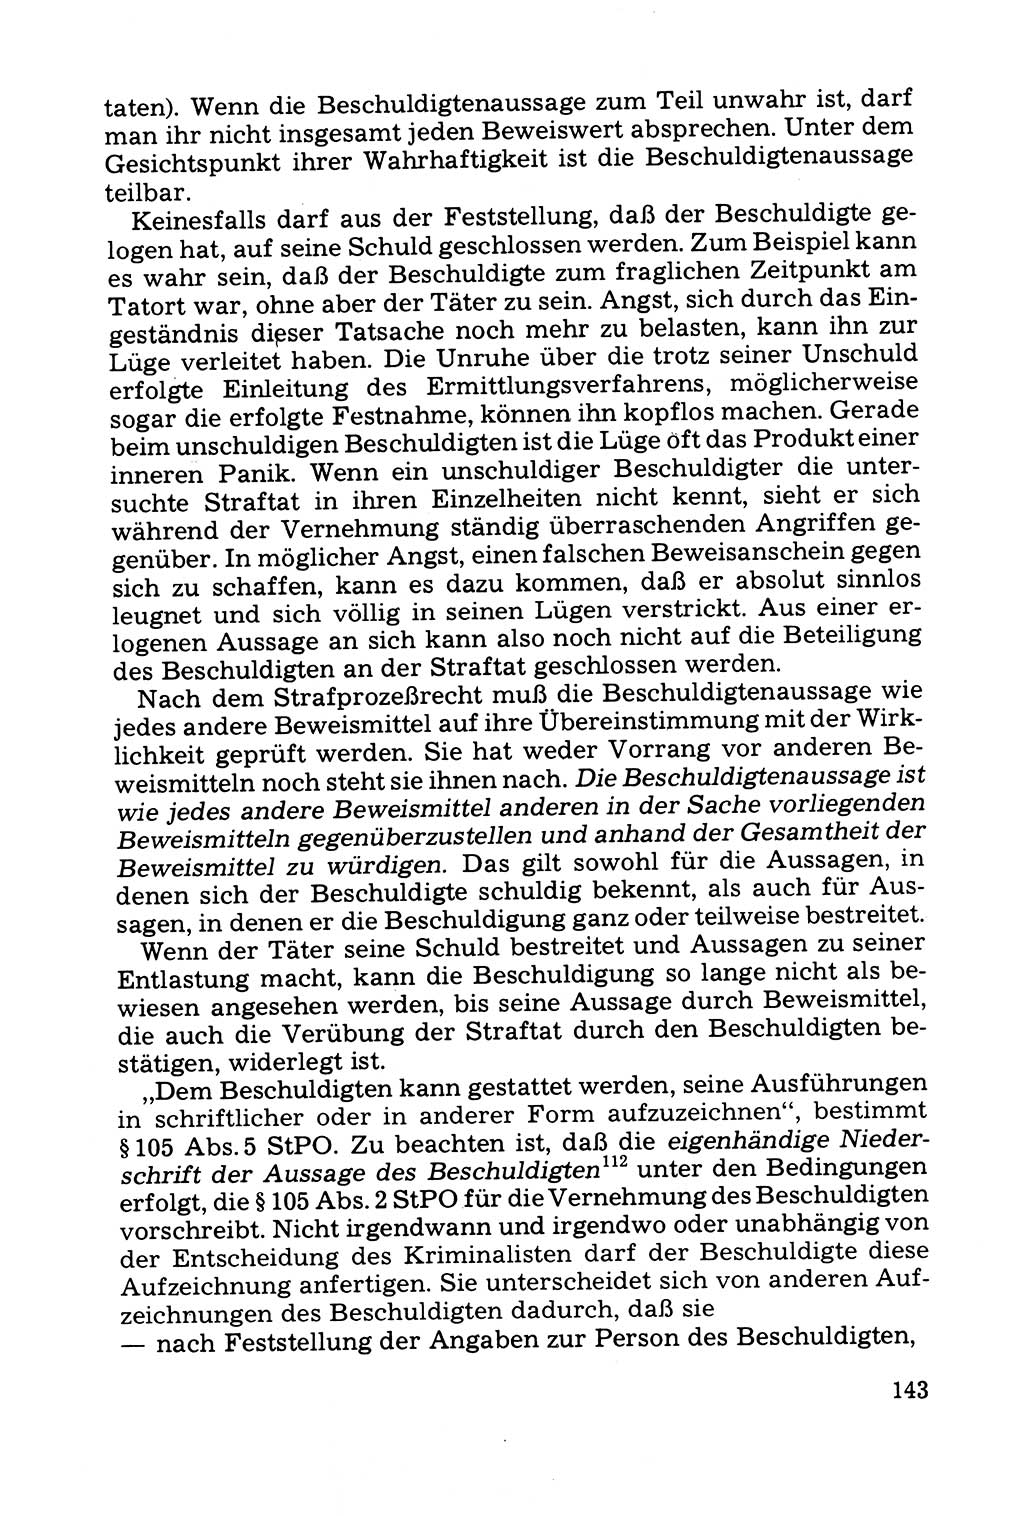 Grundfragen der Beweisführung im Ermittlungsverfahren [Deutsche Demokratische Republik (DDR)] 1980, Seite 143 (Bws.-Fhrg. EV DDR 1980, S. 143)